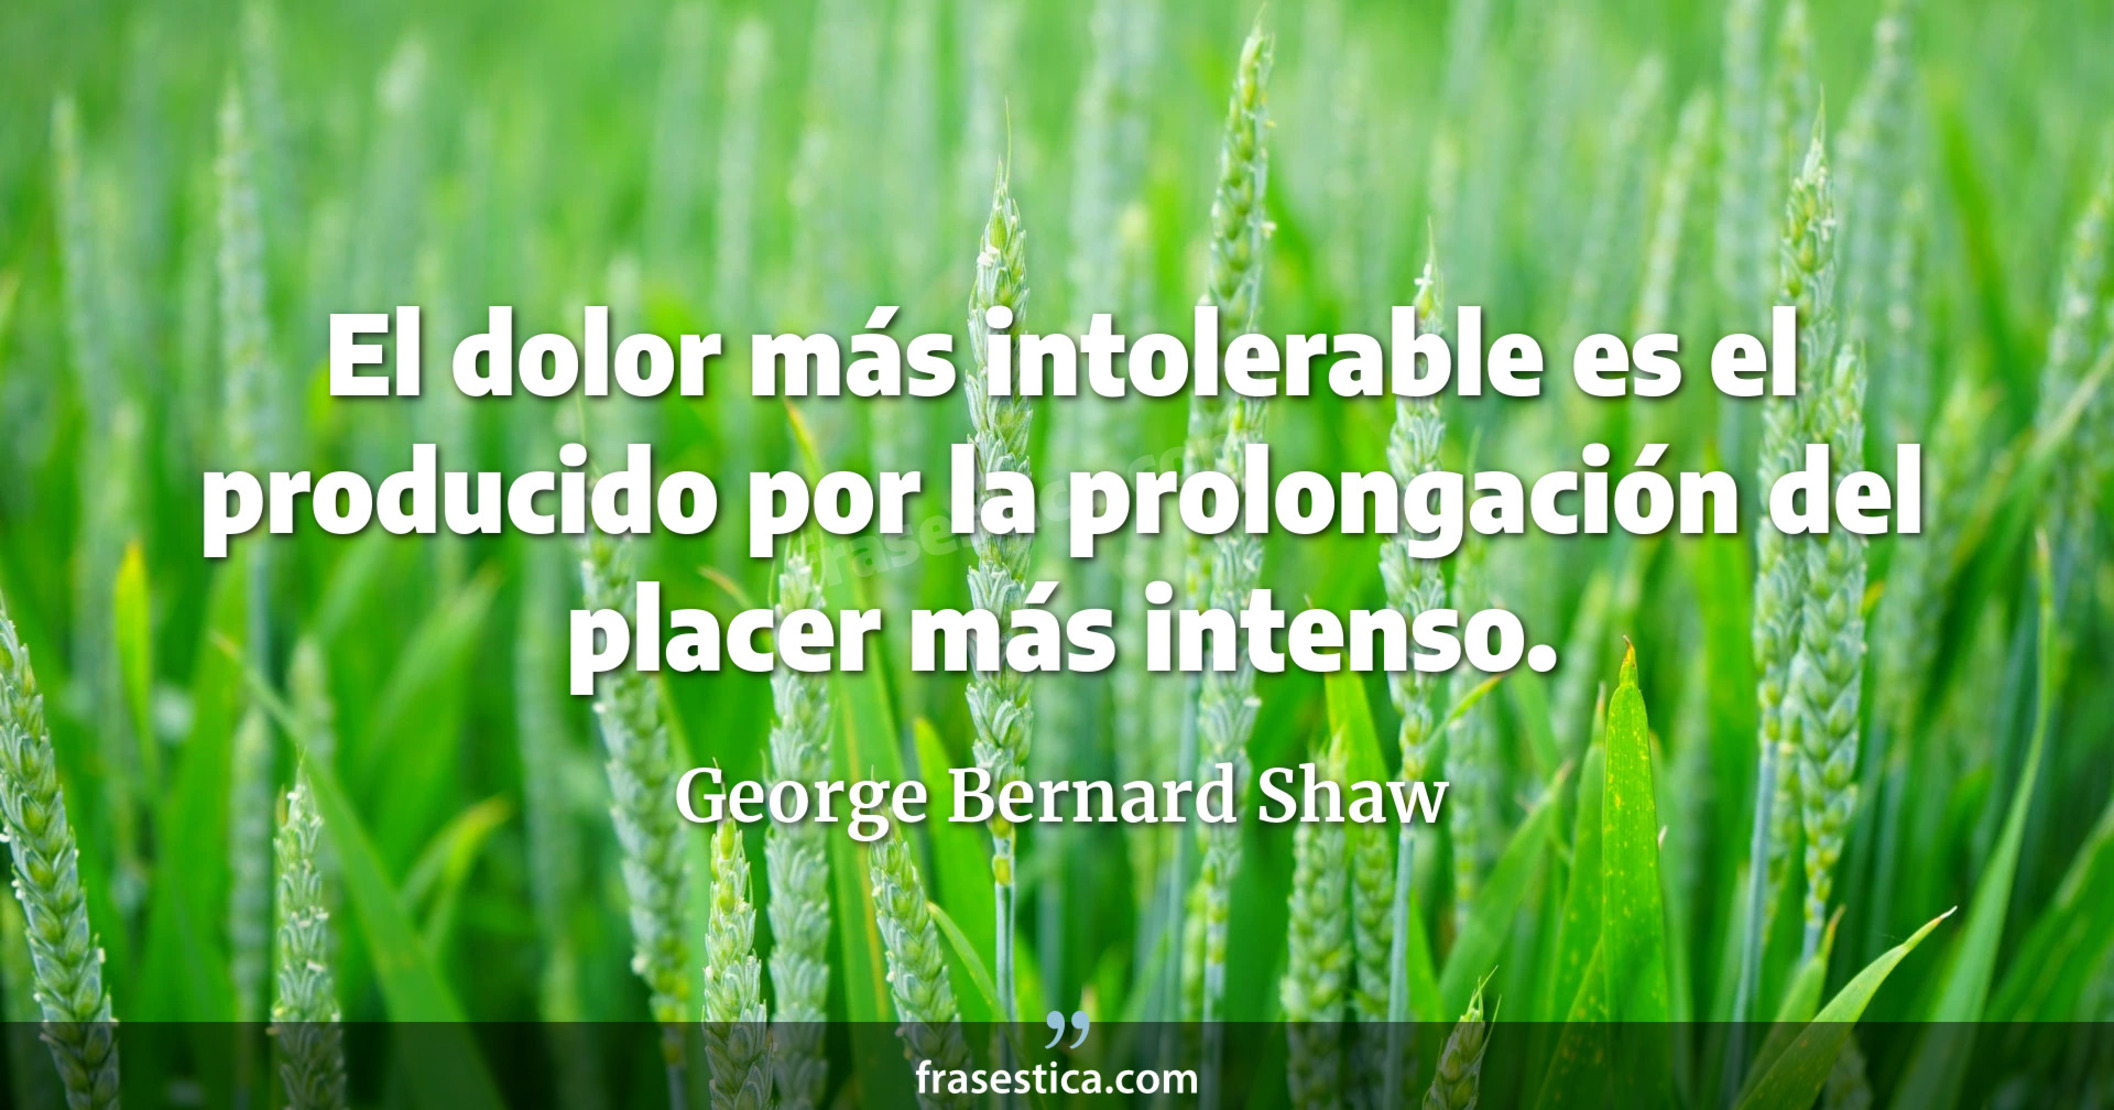 El dolor más intolerable es el producido por la prolongación del placer más intenso. - George Bernard Shaw